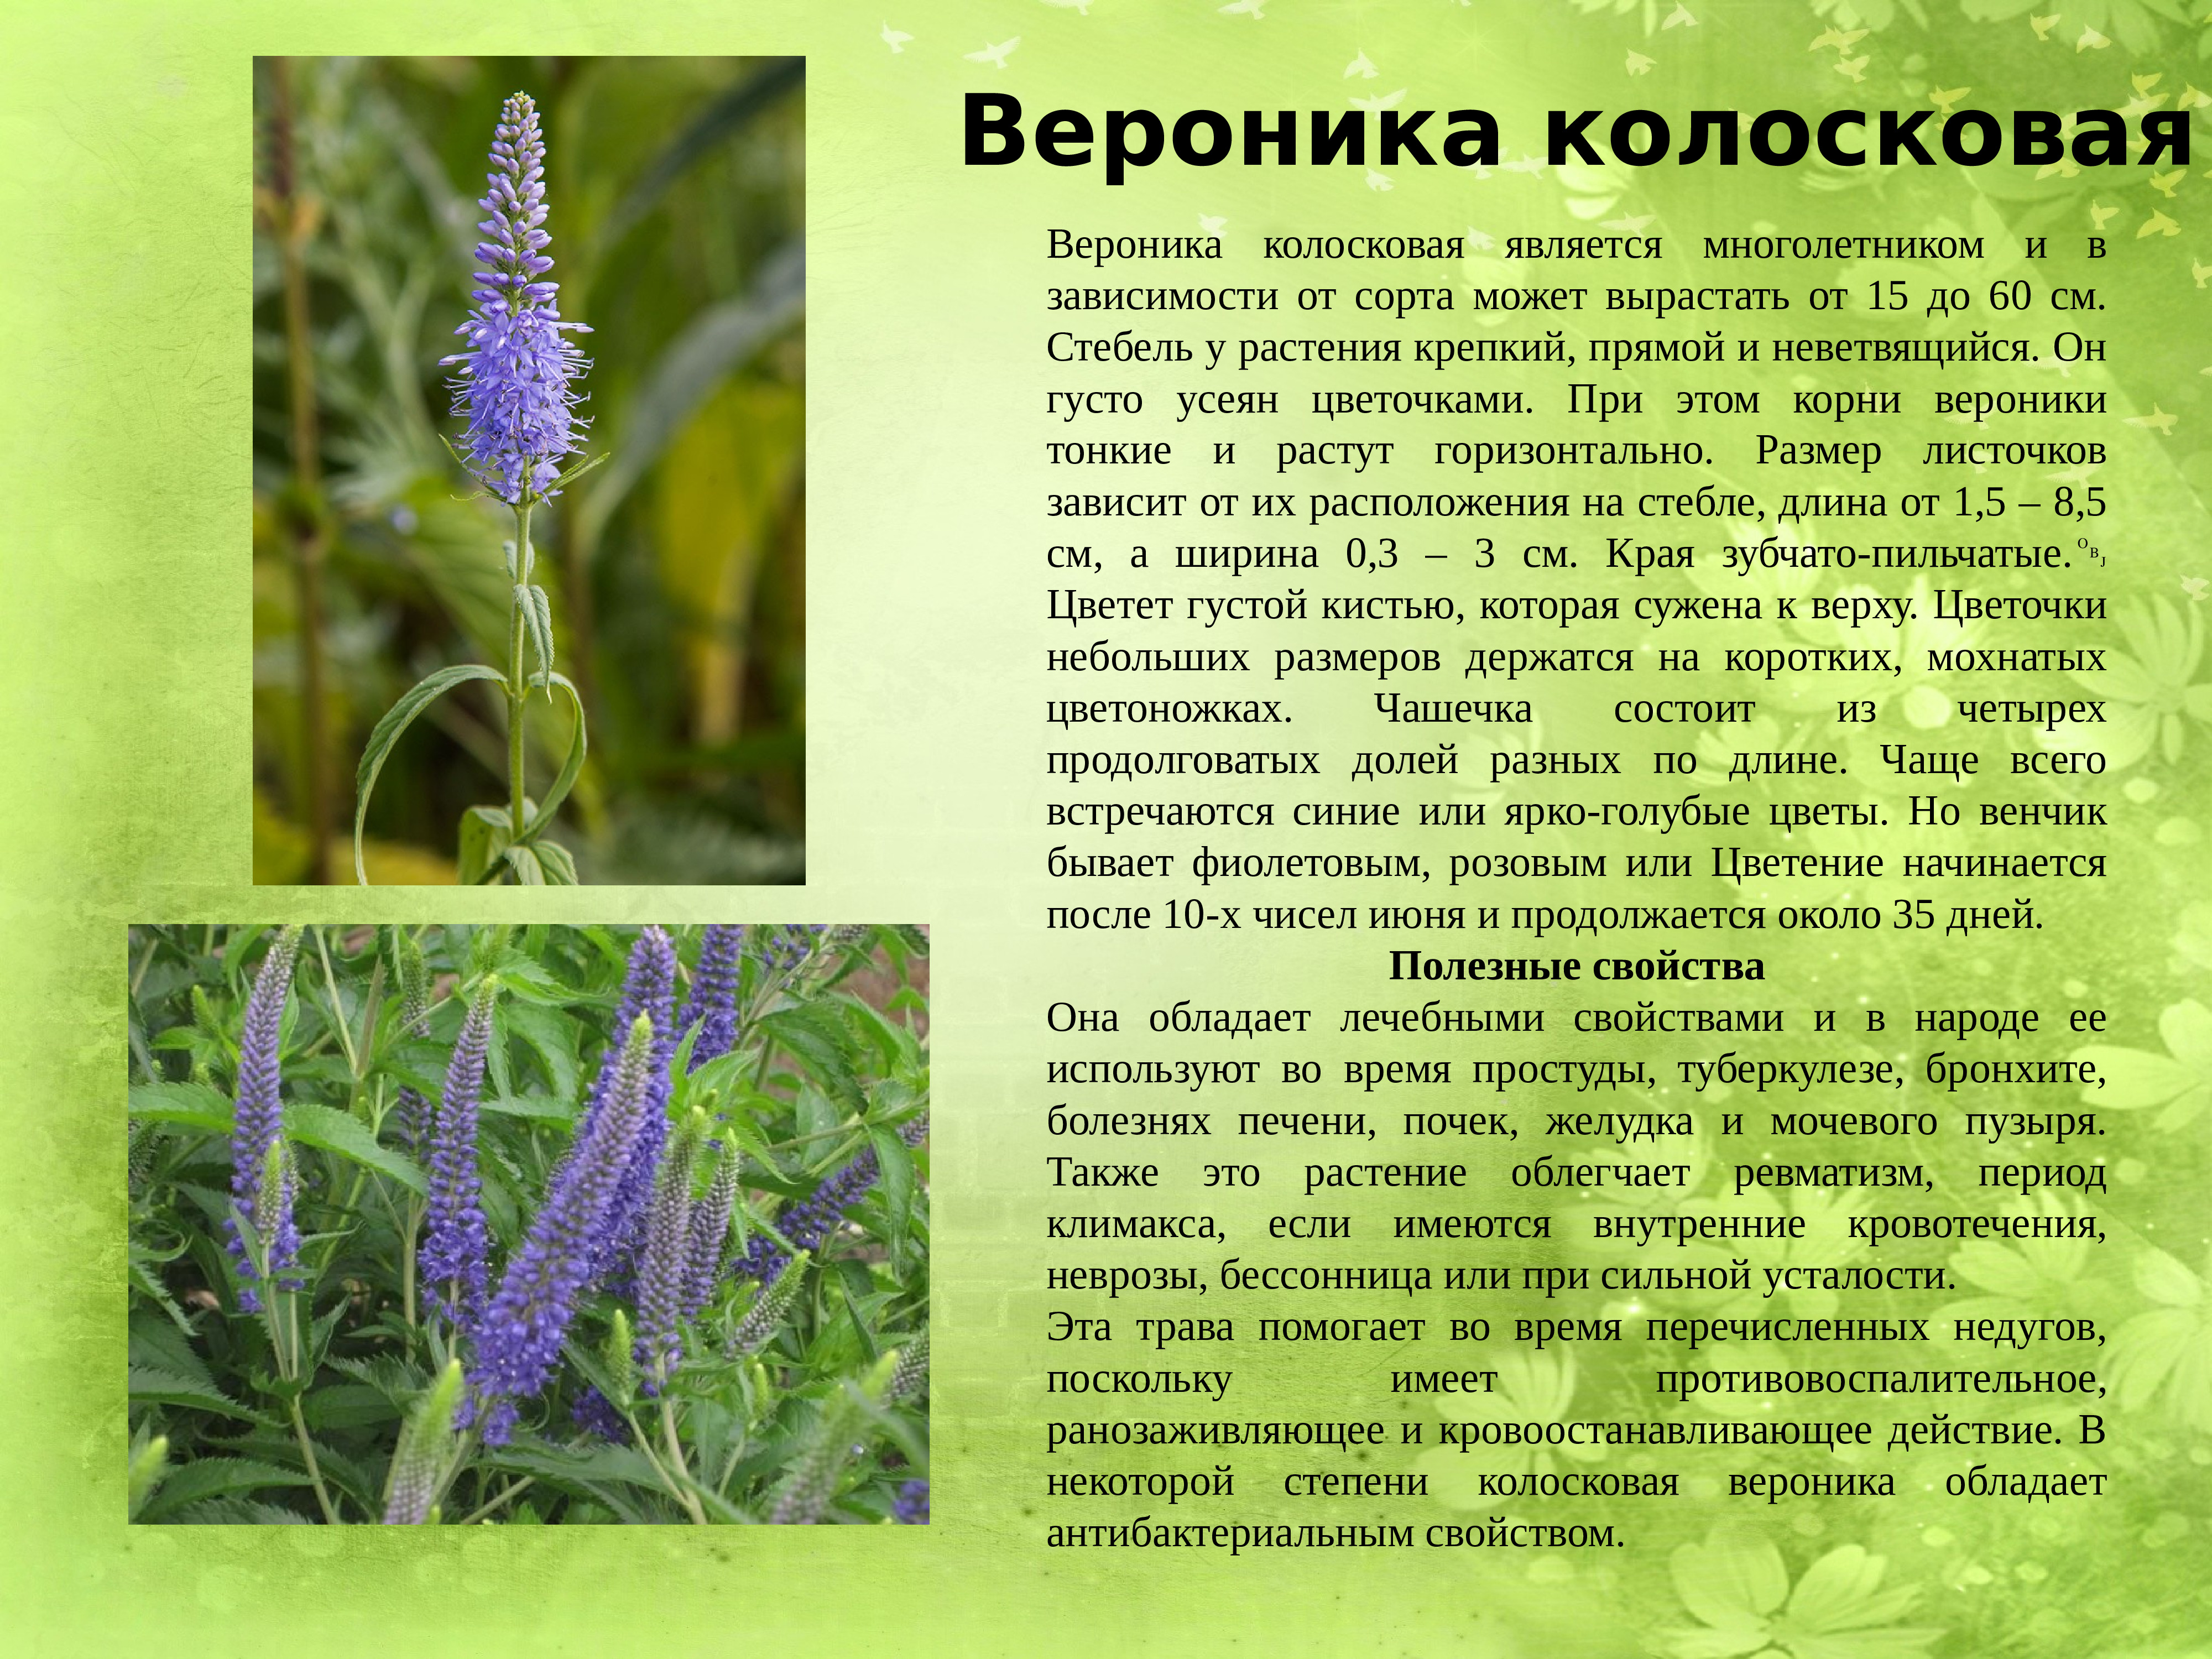 Лекарственные растения вологодской области фото и описание